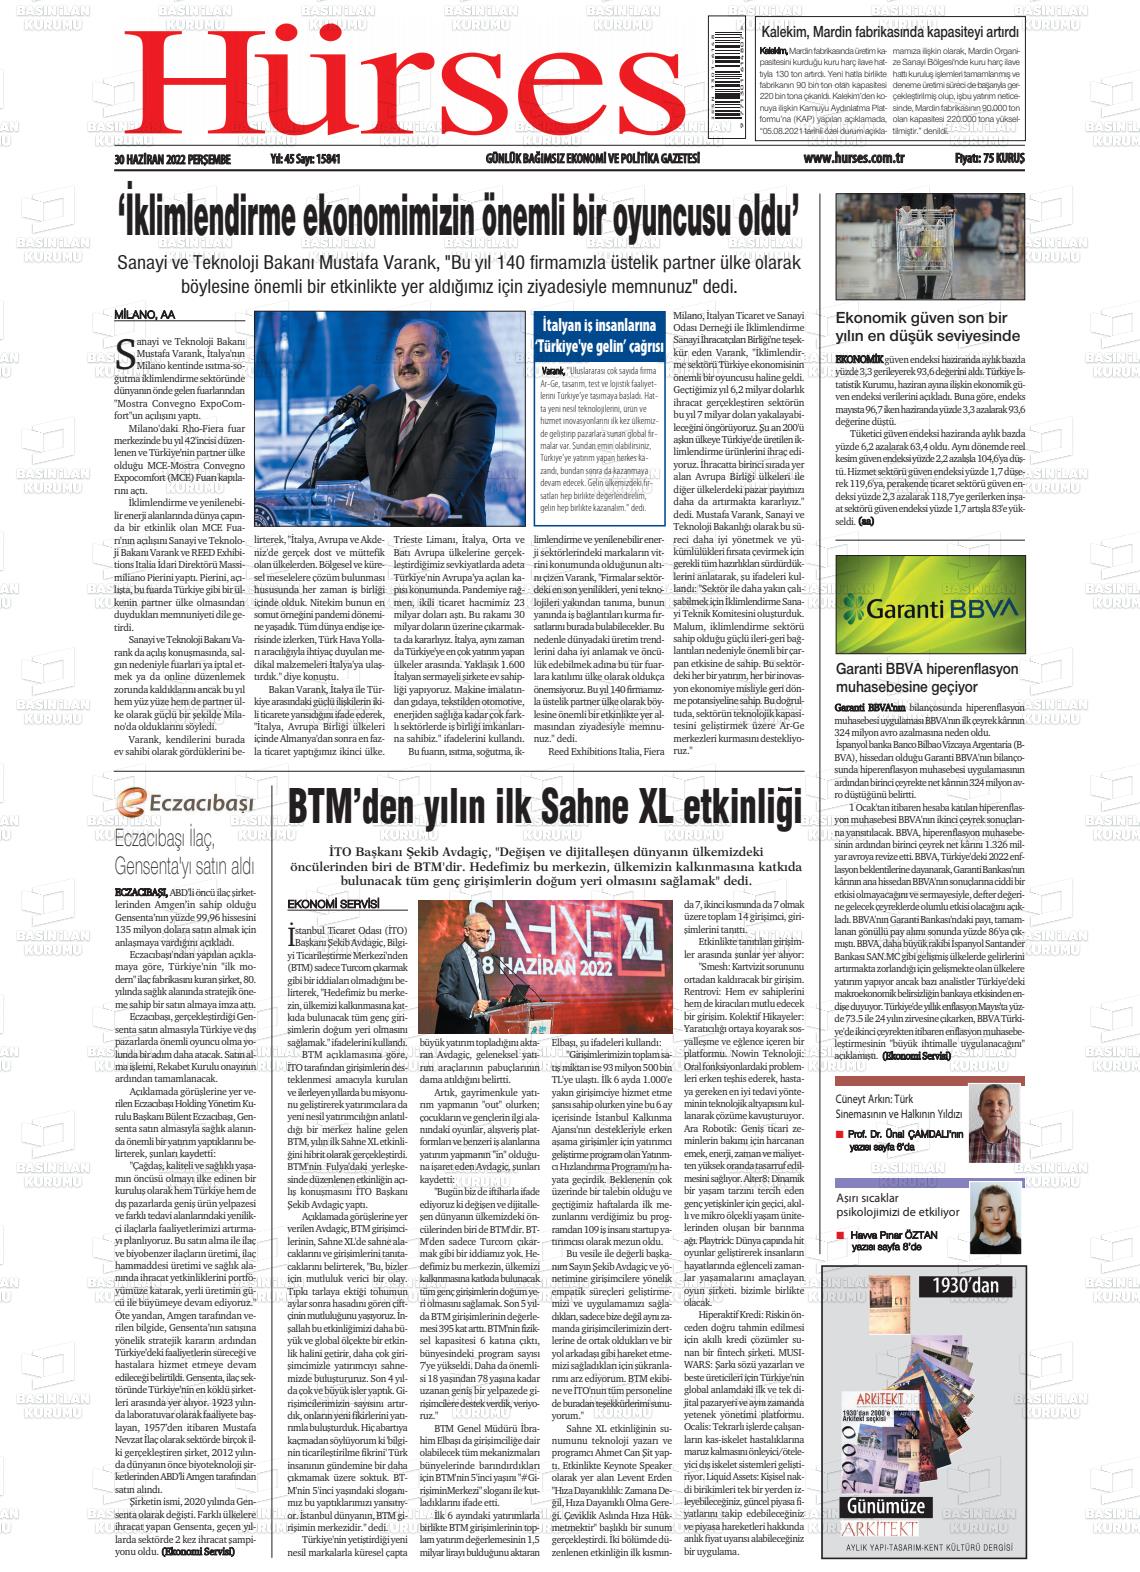 30 Haziran 2022 İstanbul Hürses gazetesi Gazete Manşeti